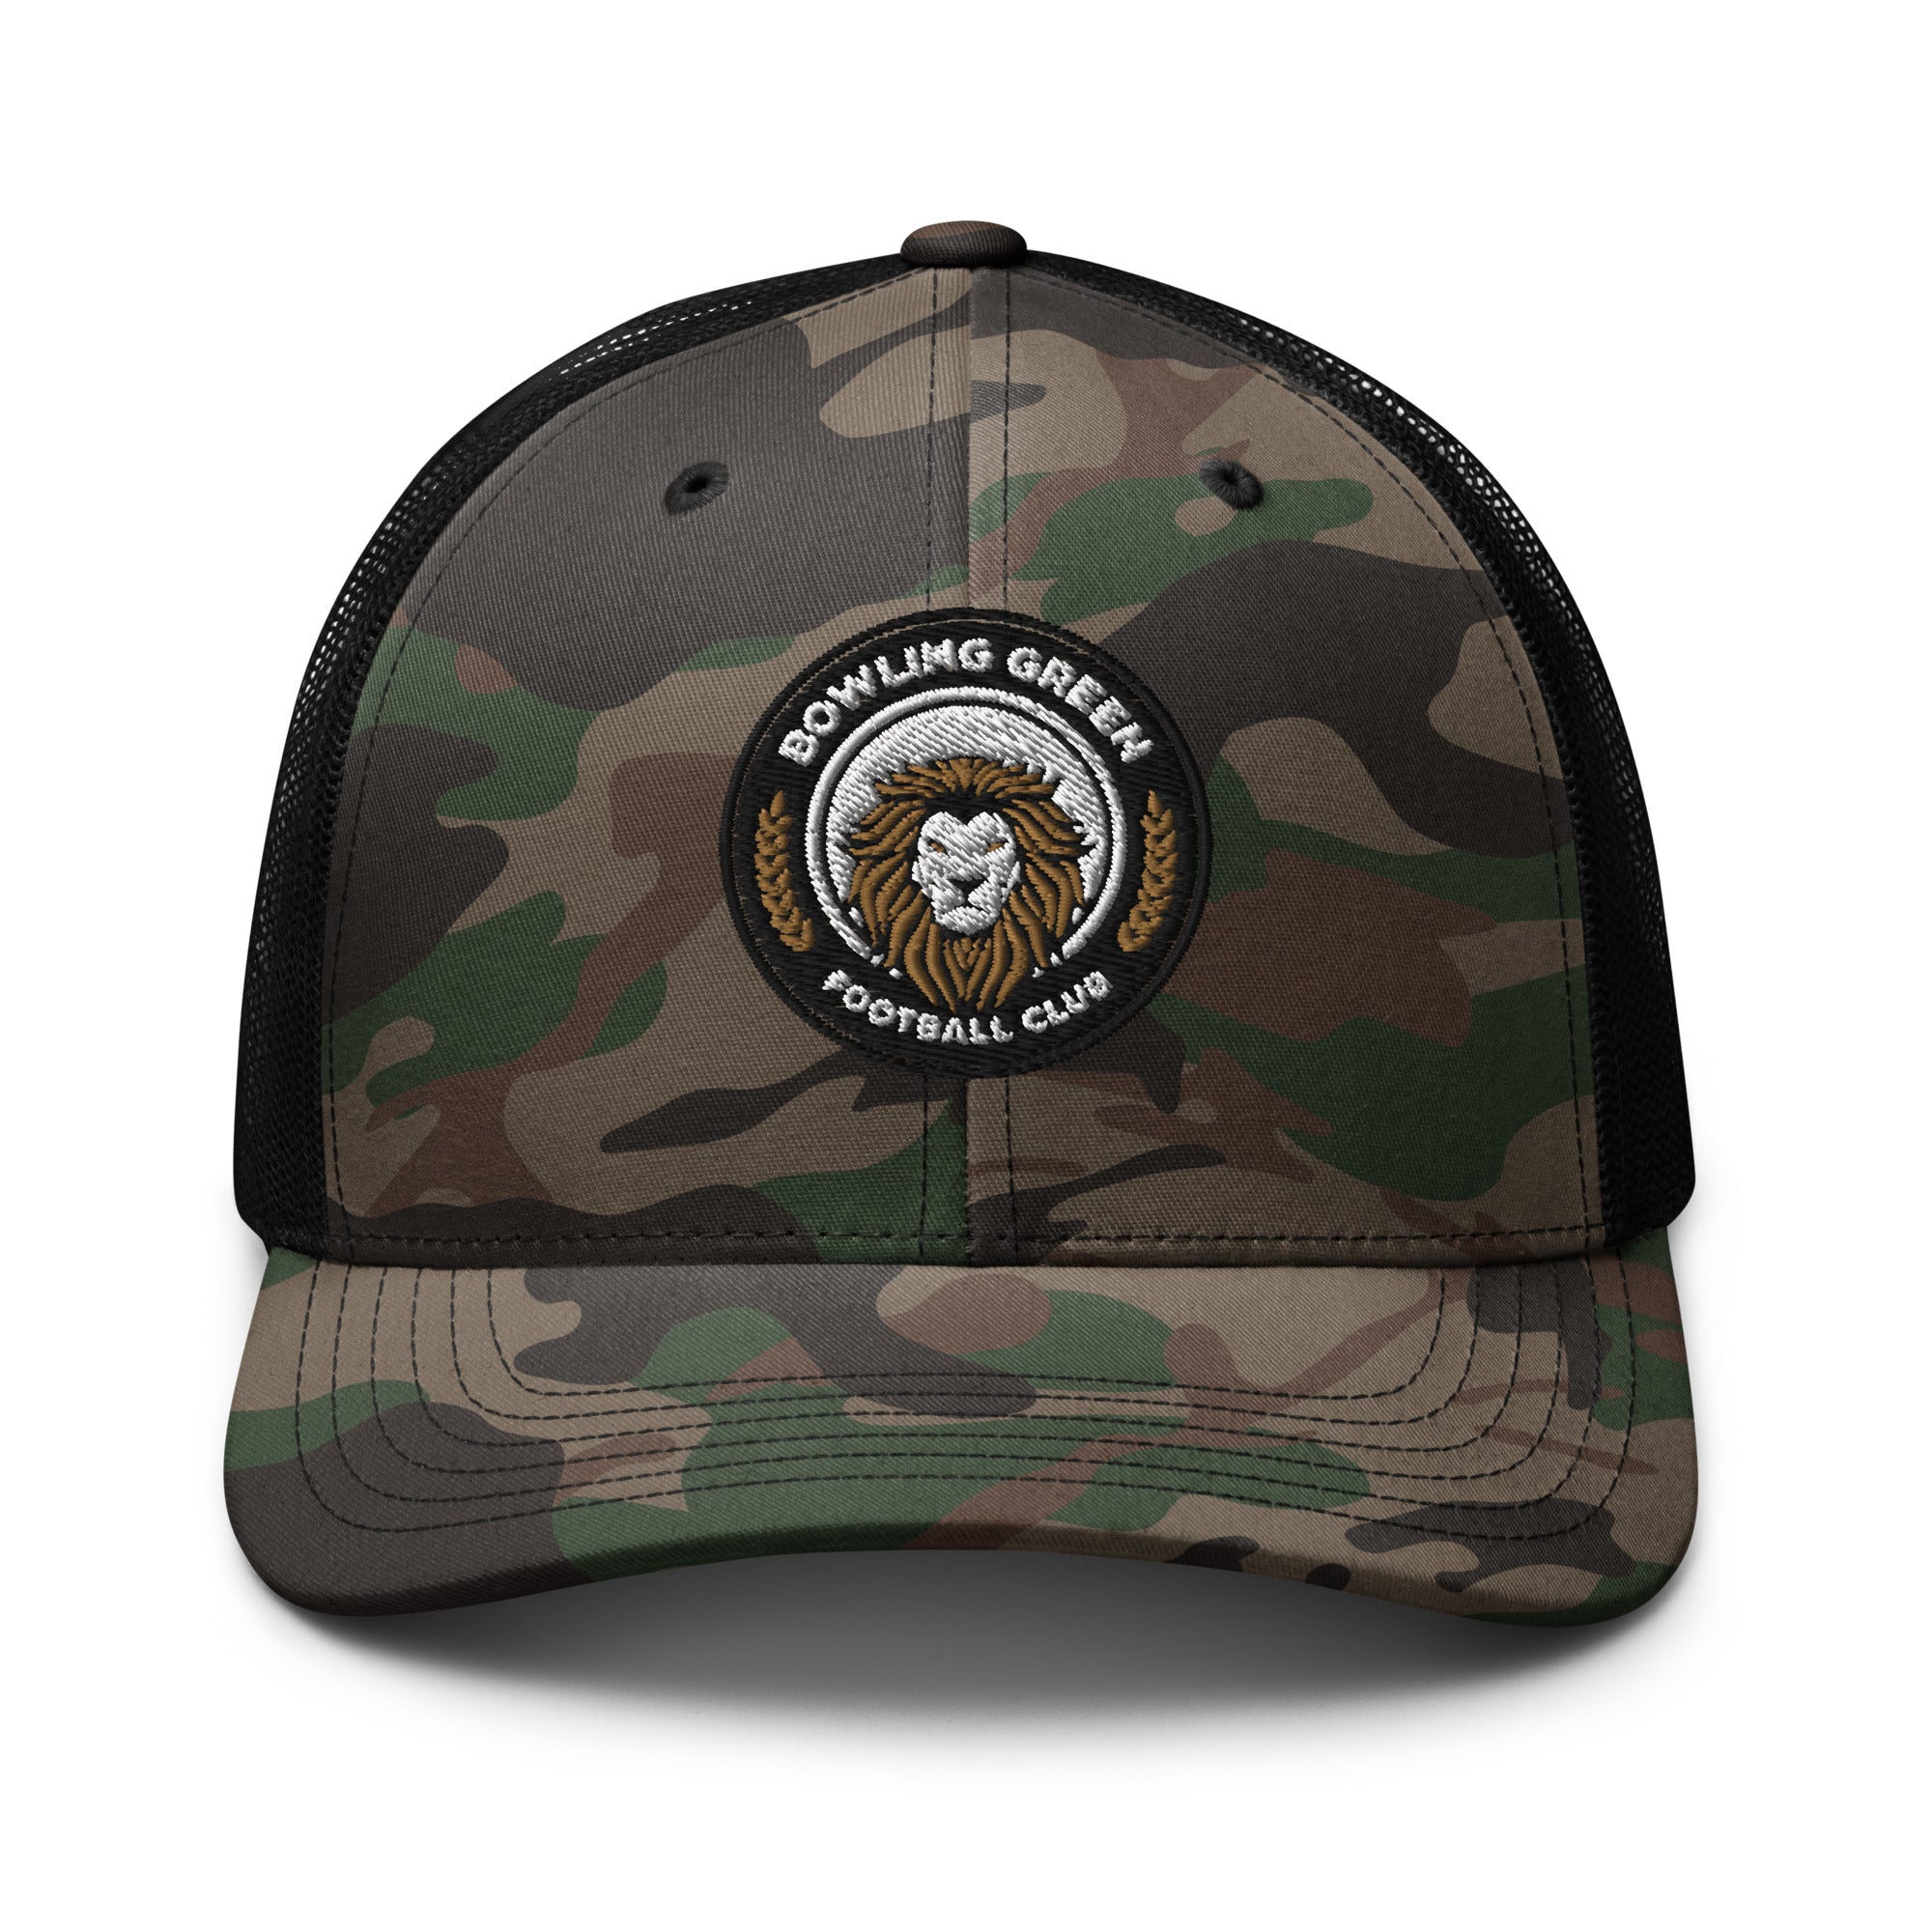 BGFC Camouflage Trucker Hat